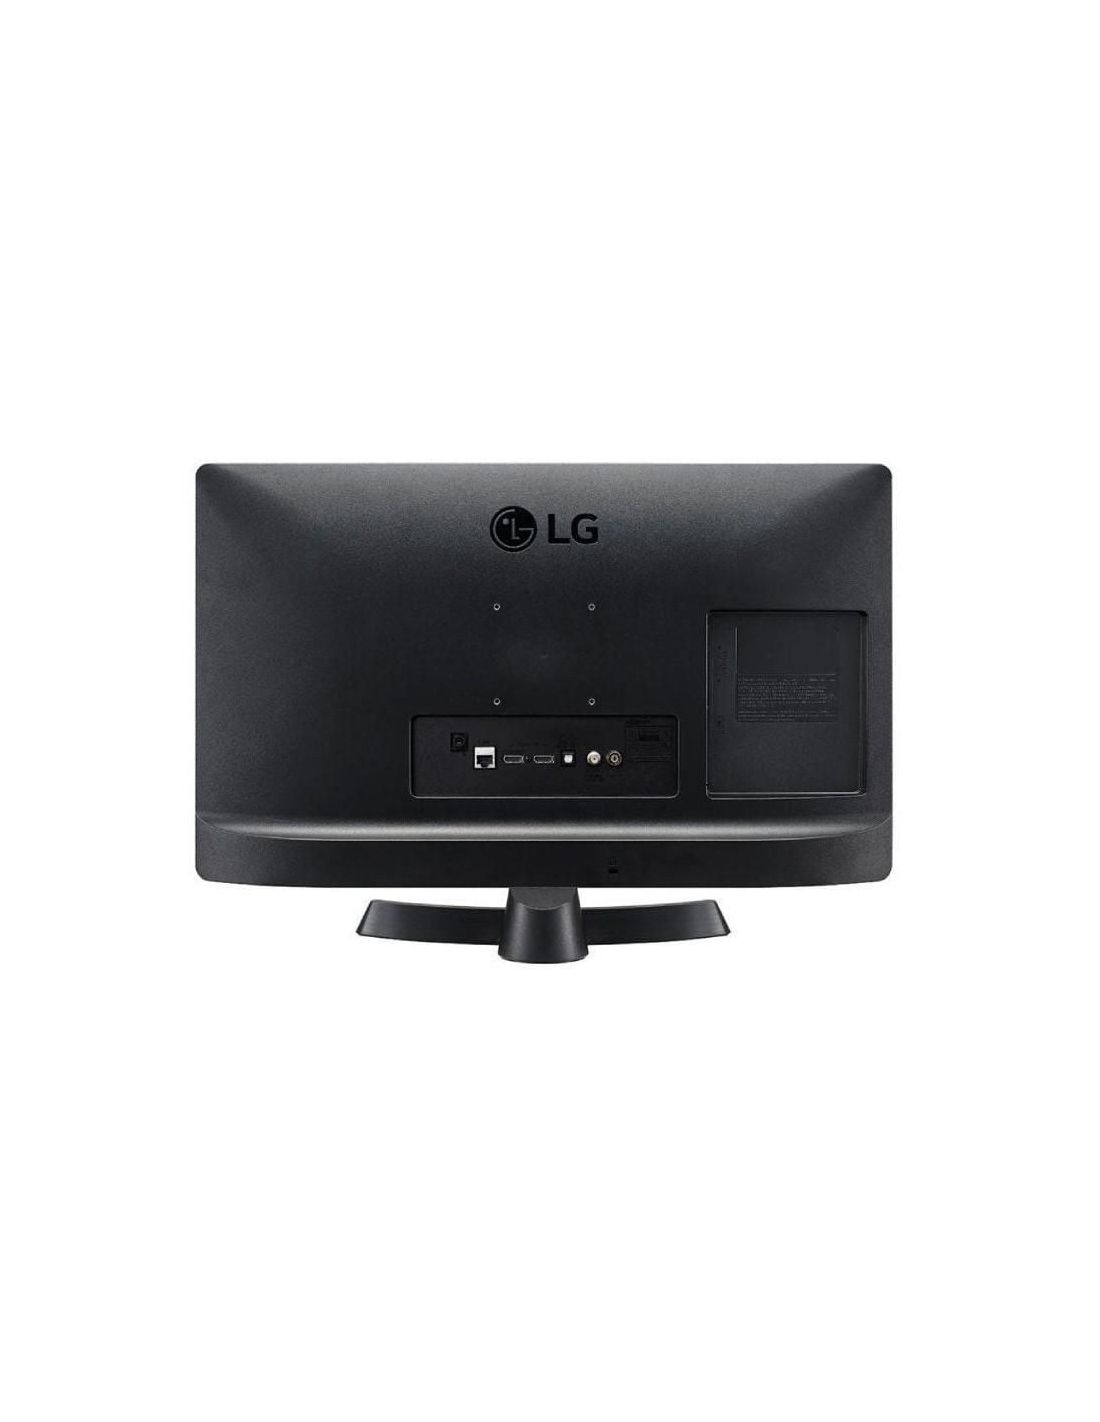 LG 24TQ510S-PZ - Monitor Smart TV de 24'' HD, amplio ángulo de visión, LED  con Profundidad